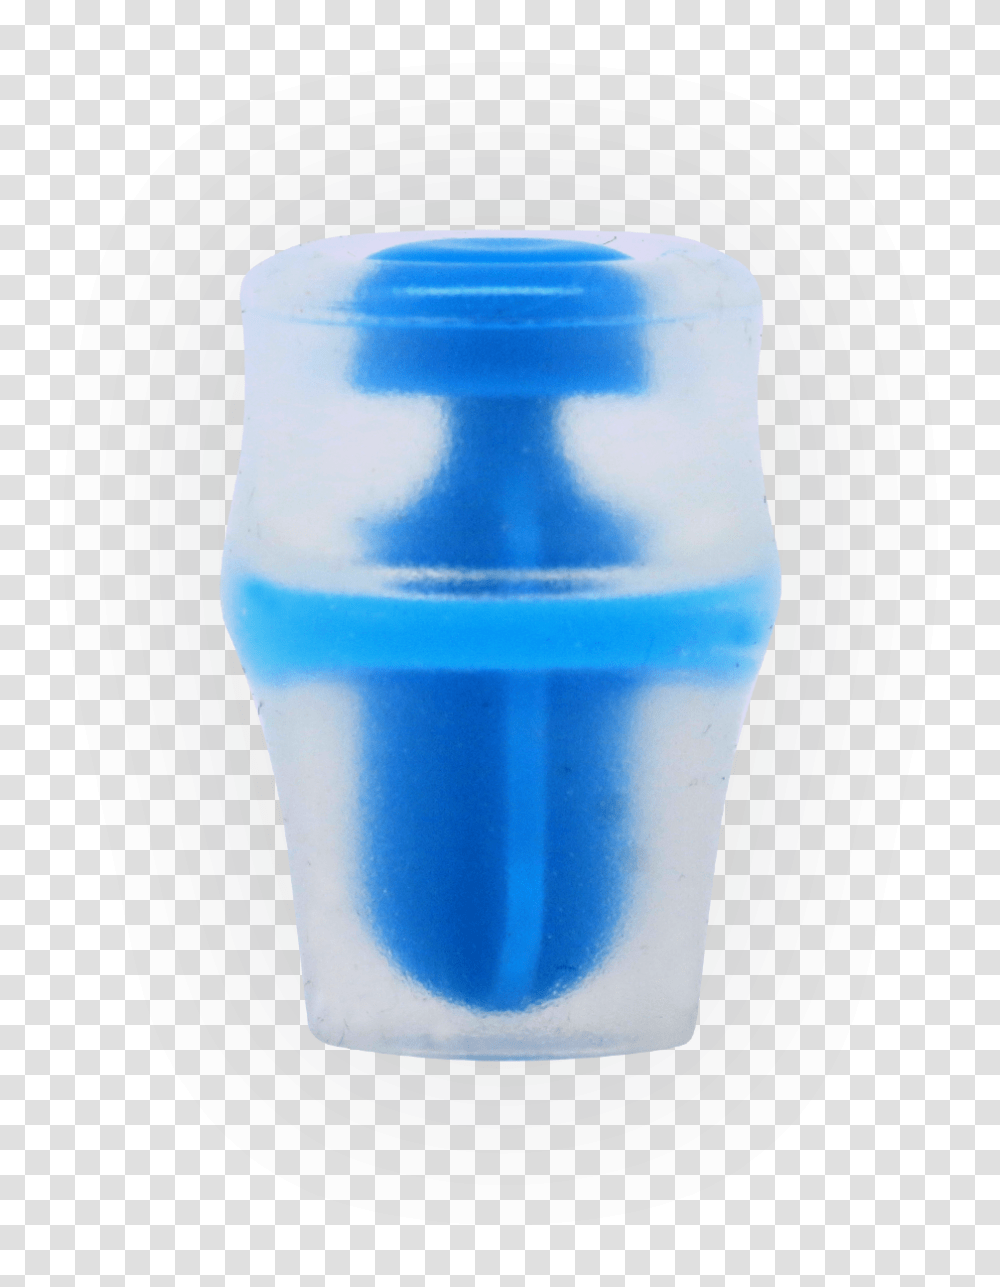 Valve For Soft Flask And Water Bladder Plastic, Milk, Beverage, Drink, Pottery Transparent Png